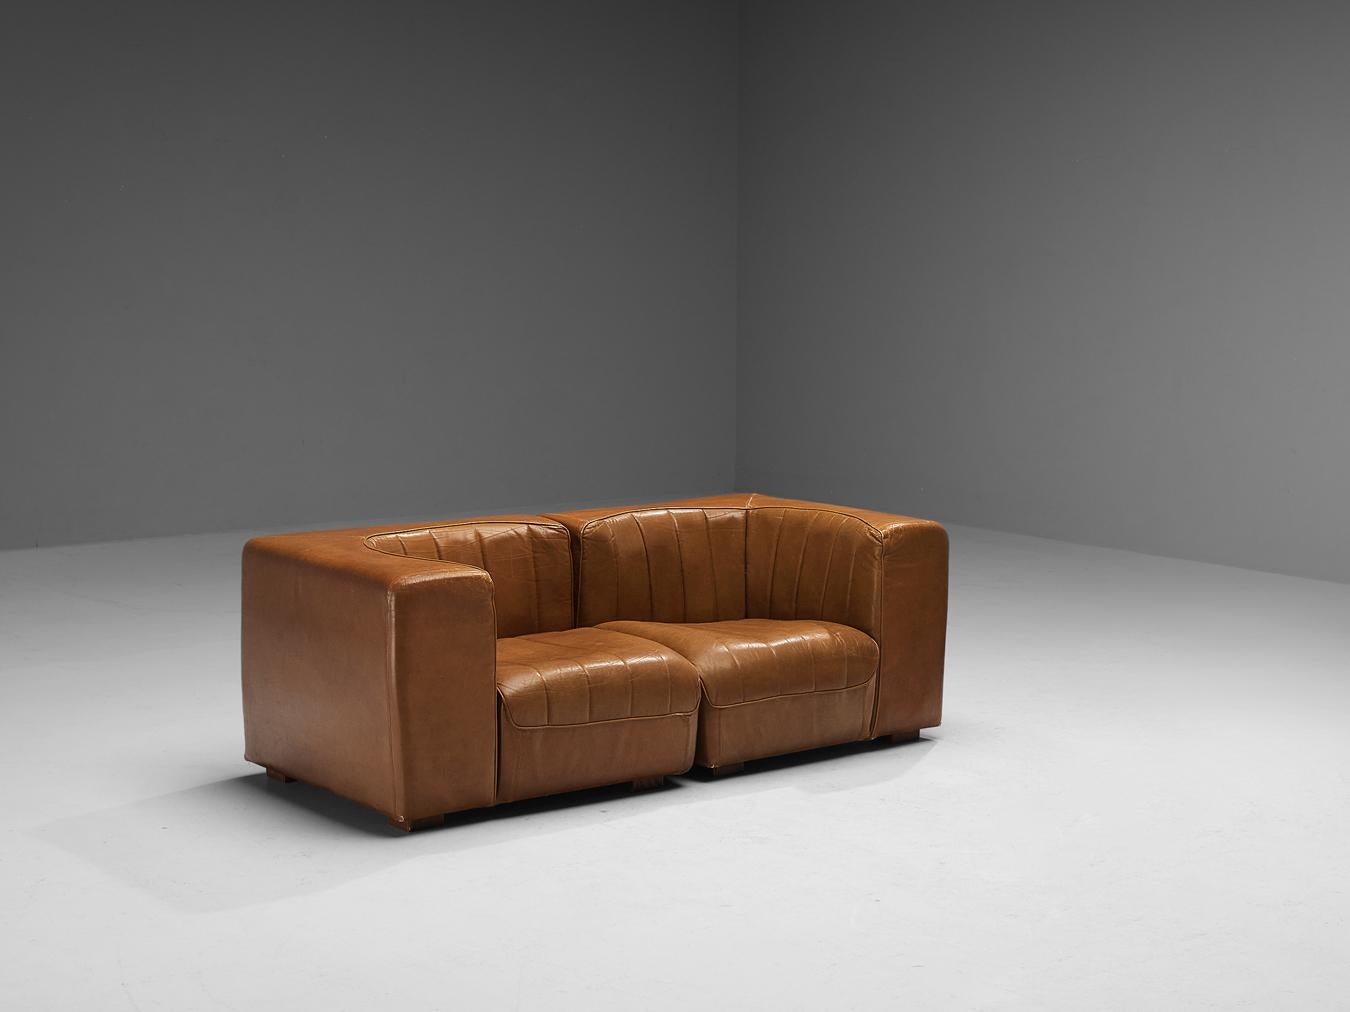 Tito Agnoli für Arflex, Zweisitzer-Sofa, Modell '9000', patiniertes Leder, Holz, Italien, 1969

Dieses Design zeichnet sich durch einen kubischen Außenrahmen aus, der einen optisch interessanten Kontrast zum runden Sitz bildet. Beim Sitzen verspürt